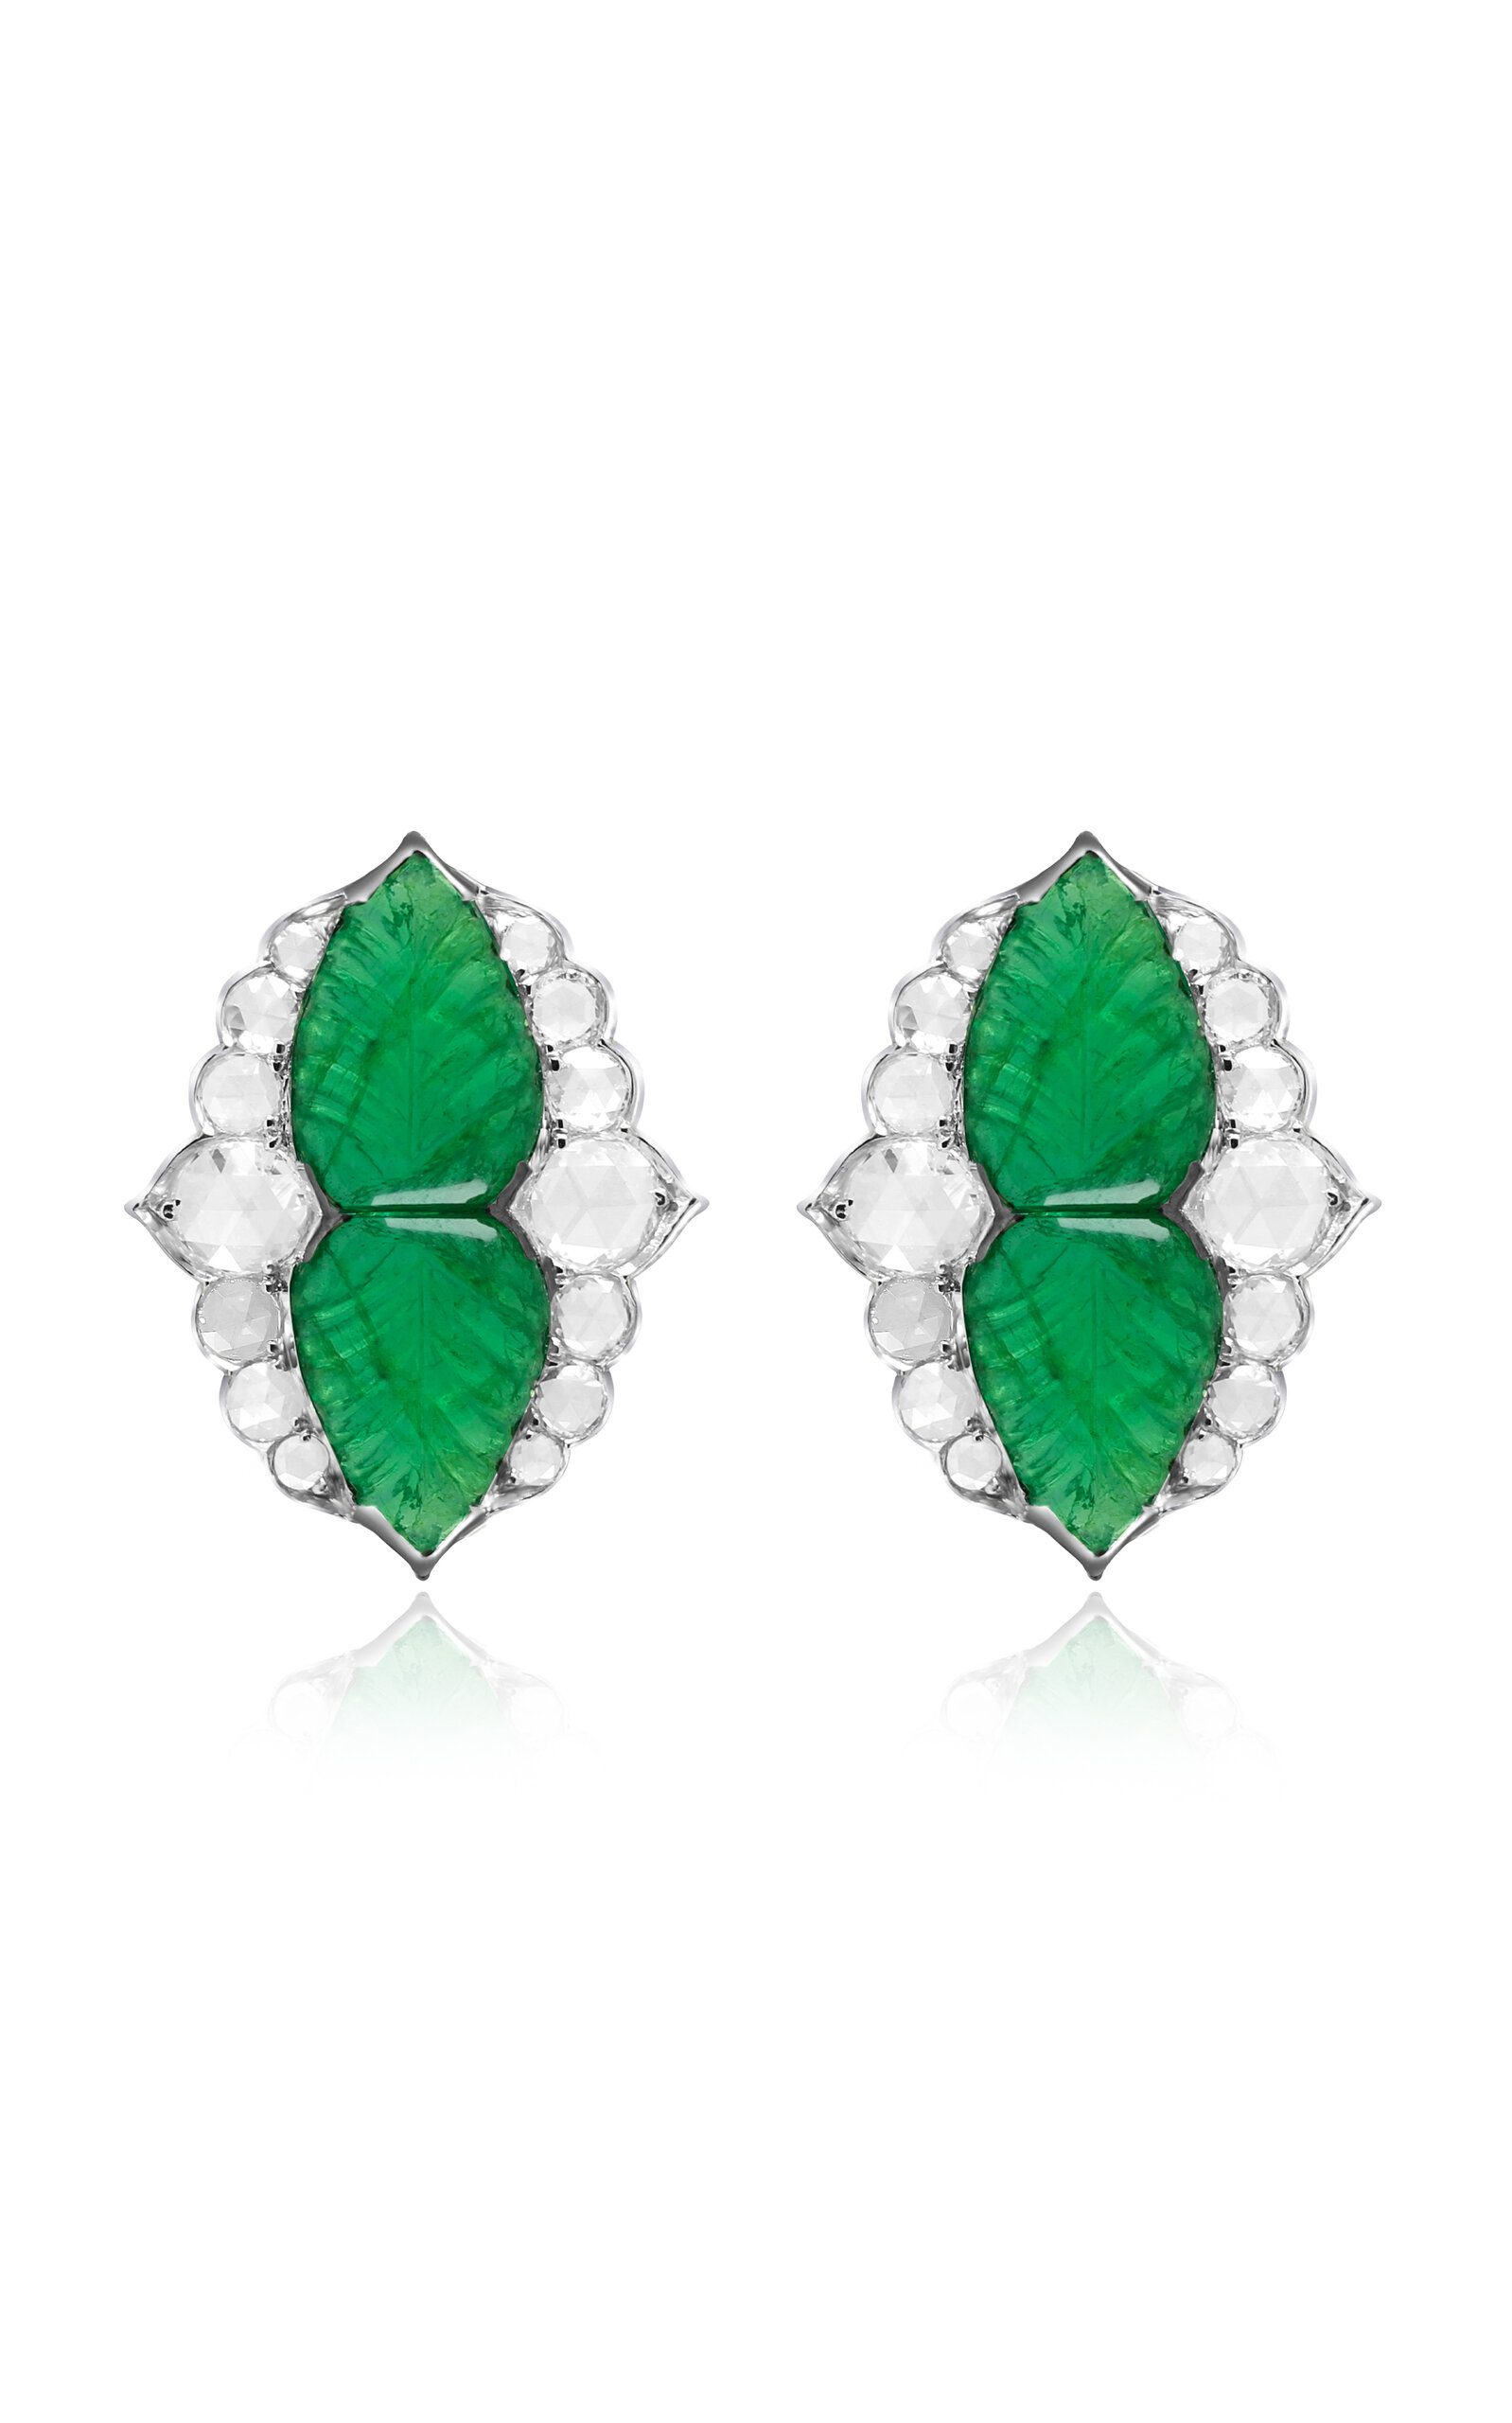 18K White Gold Architectural Splender Diamond and Emerald Earrings